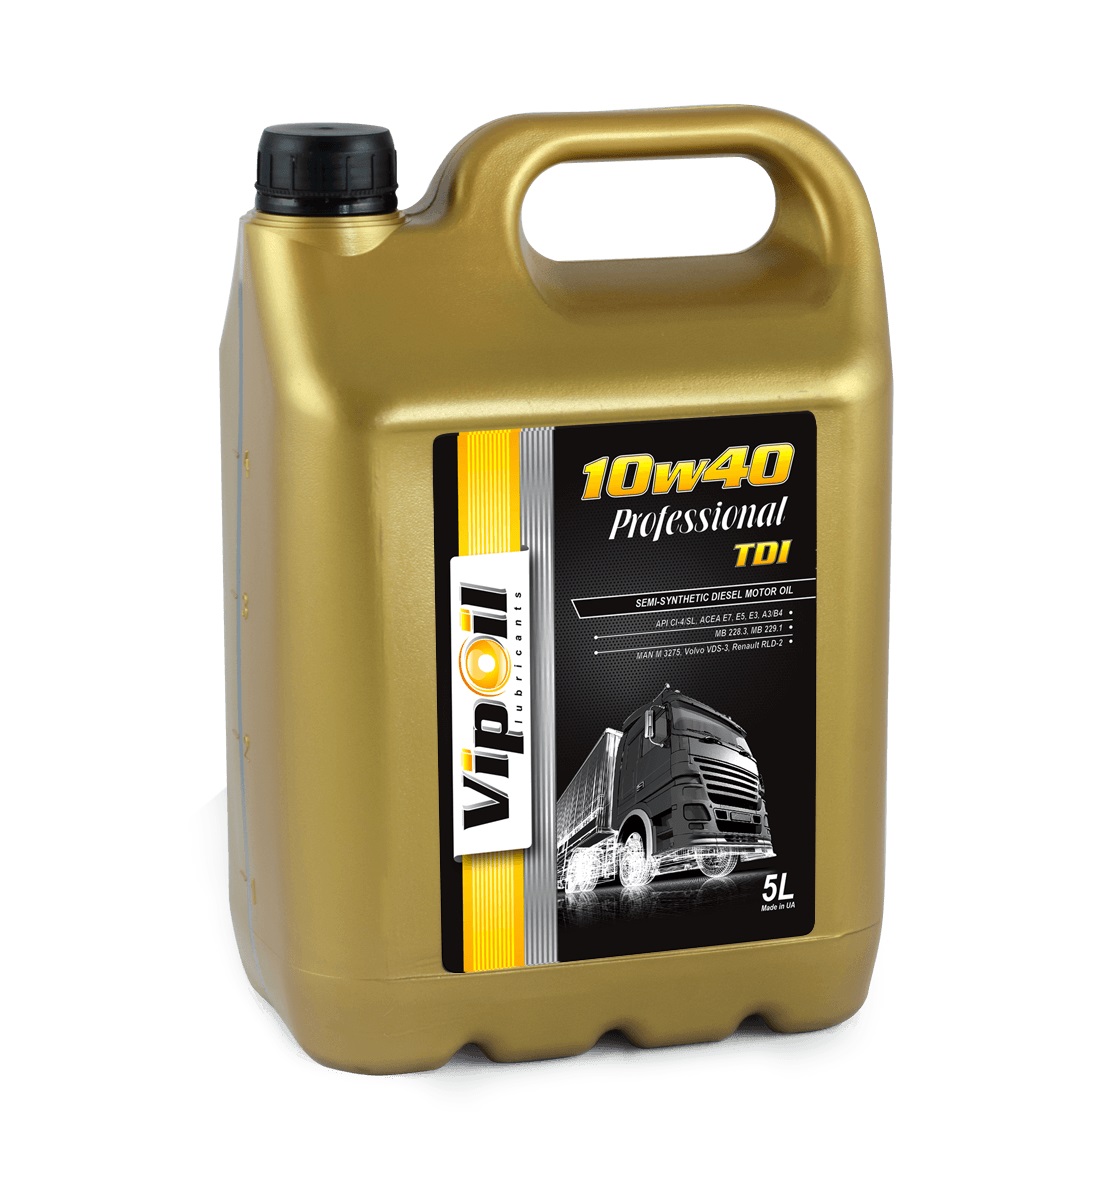 VipOil 0162839 Motor oil Vipoil Professional TDI 10W-40, 5 l 0162839